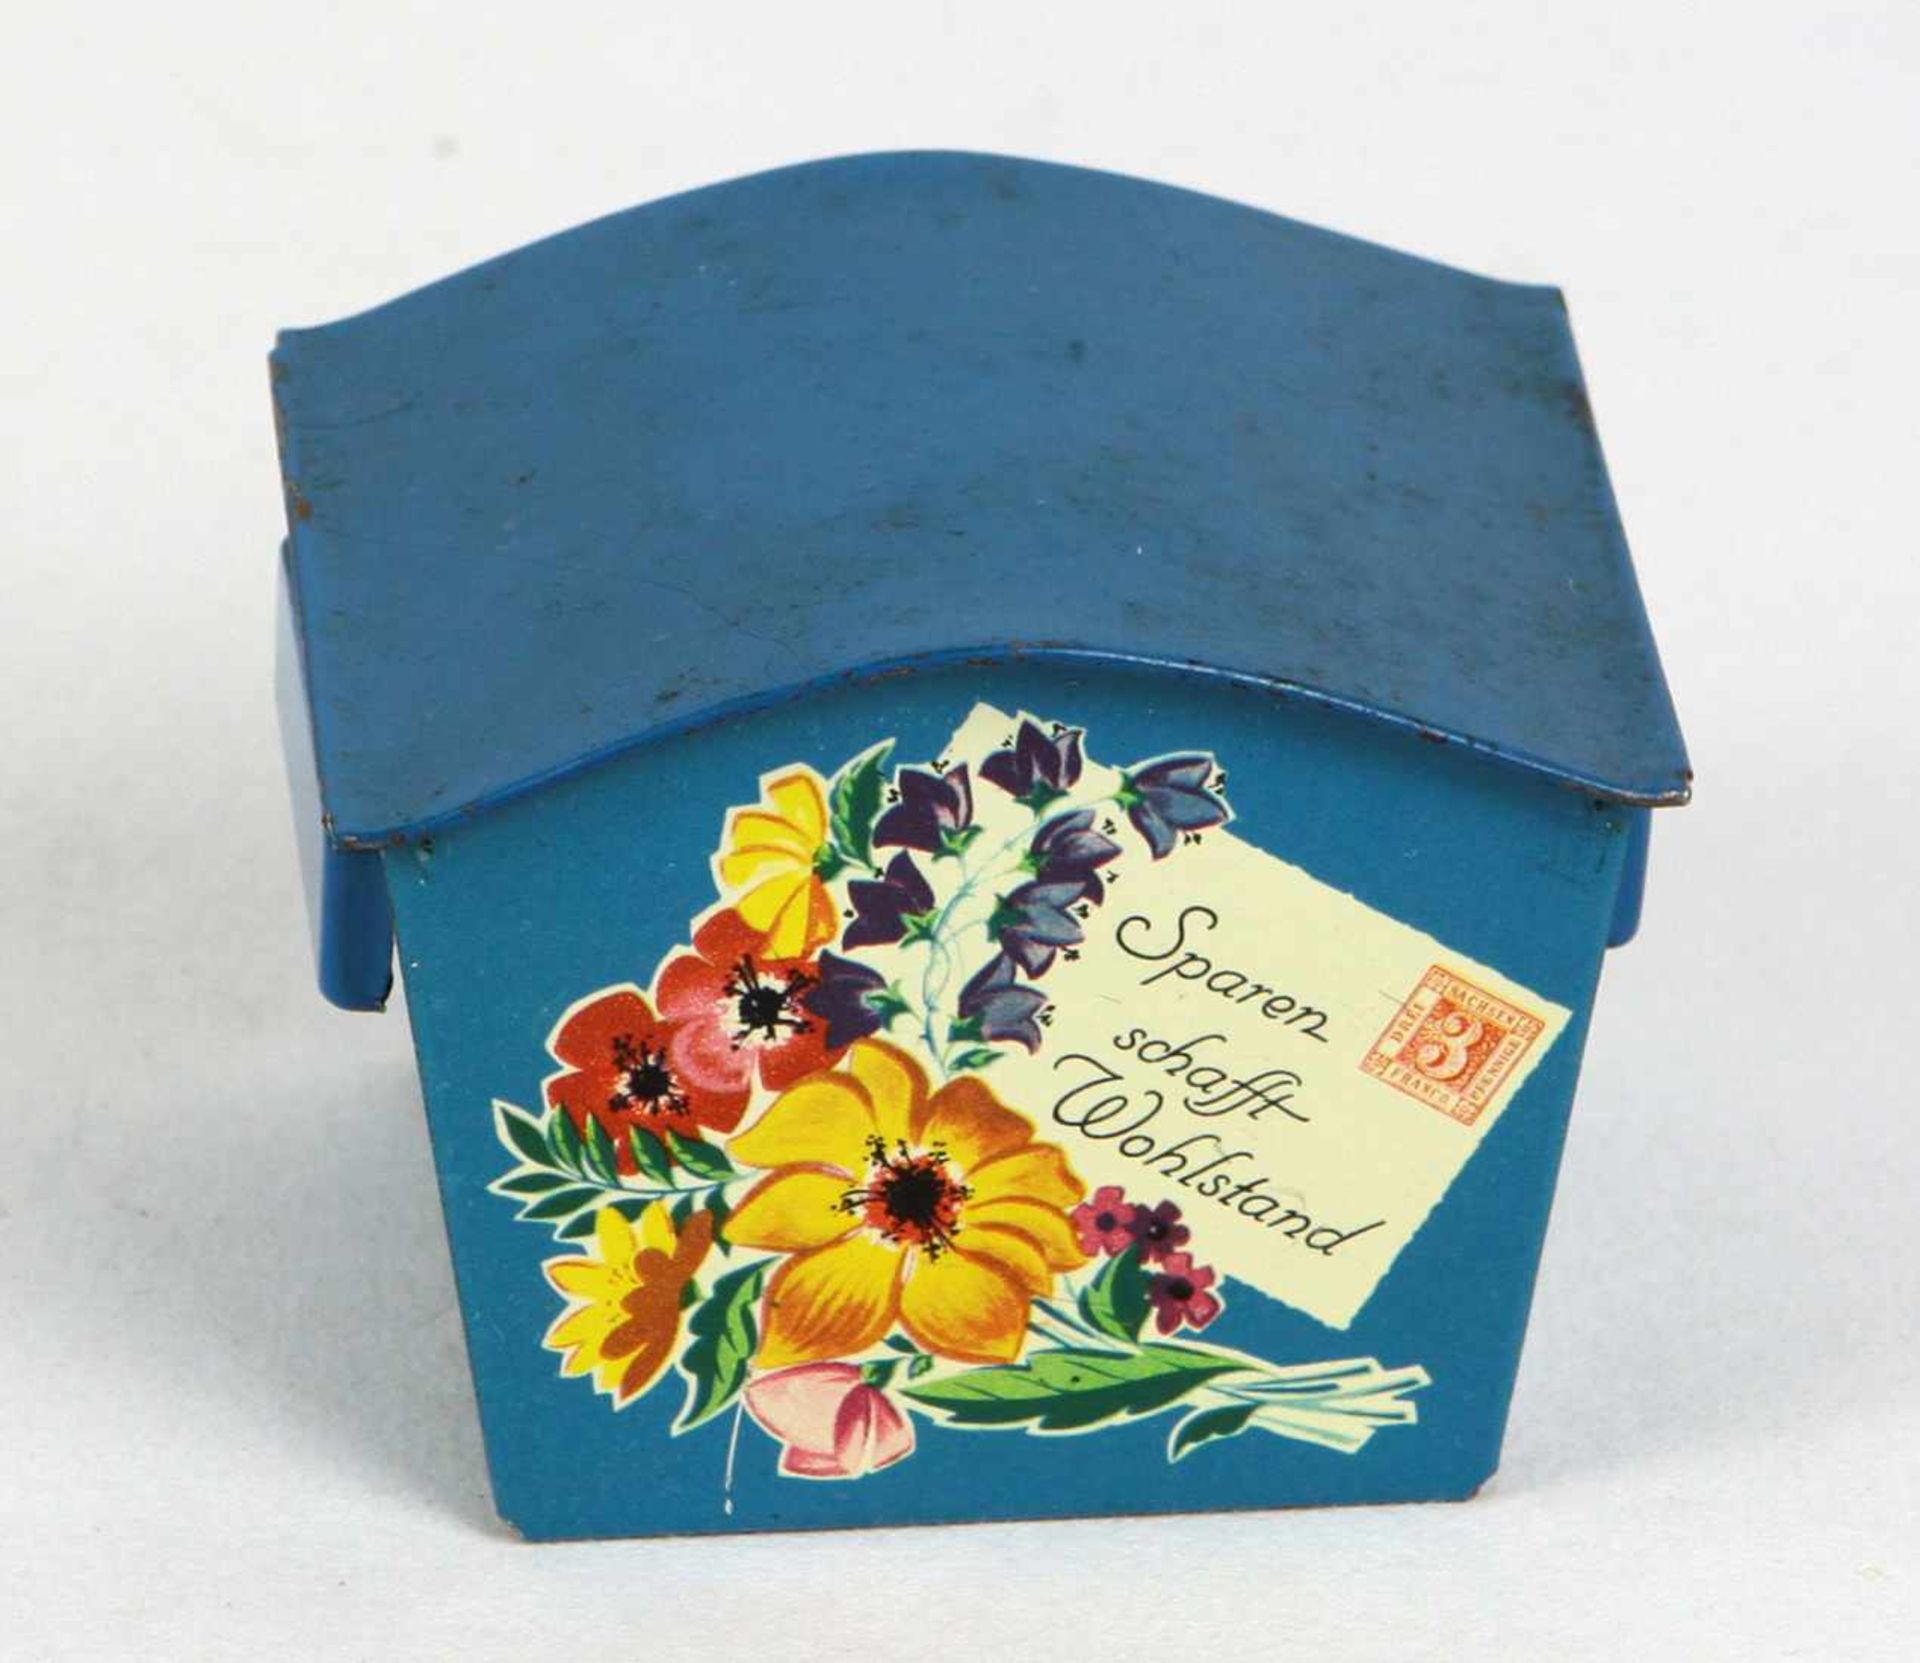 Puppenstuben Briefkasten Blech blau lithographiert, Briefkasten für die Puppenstube in eckiger